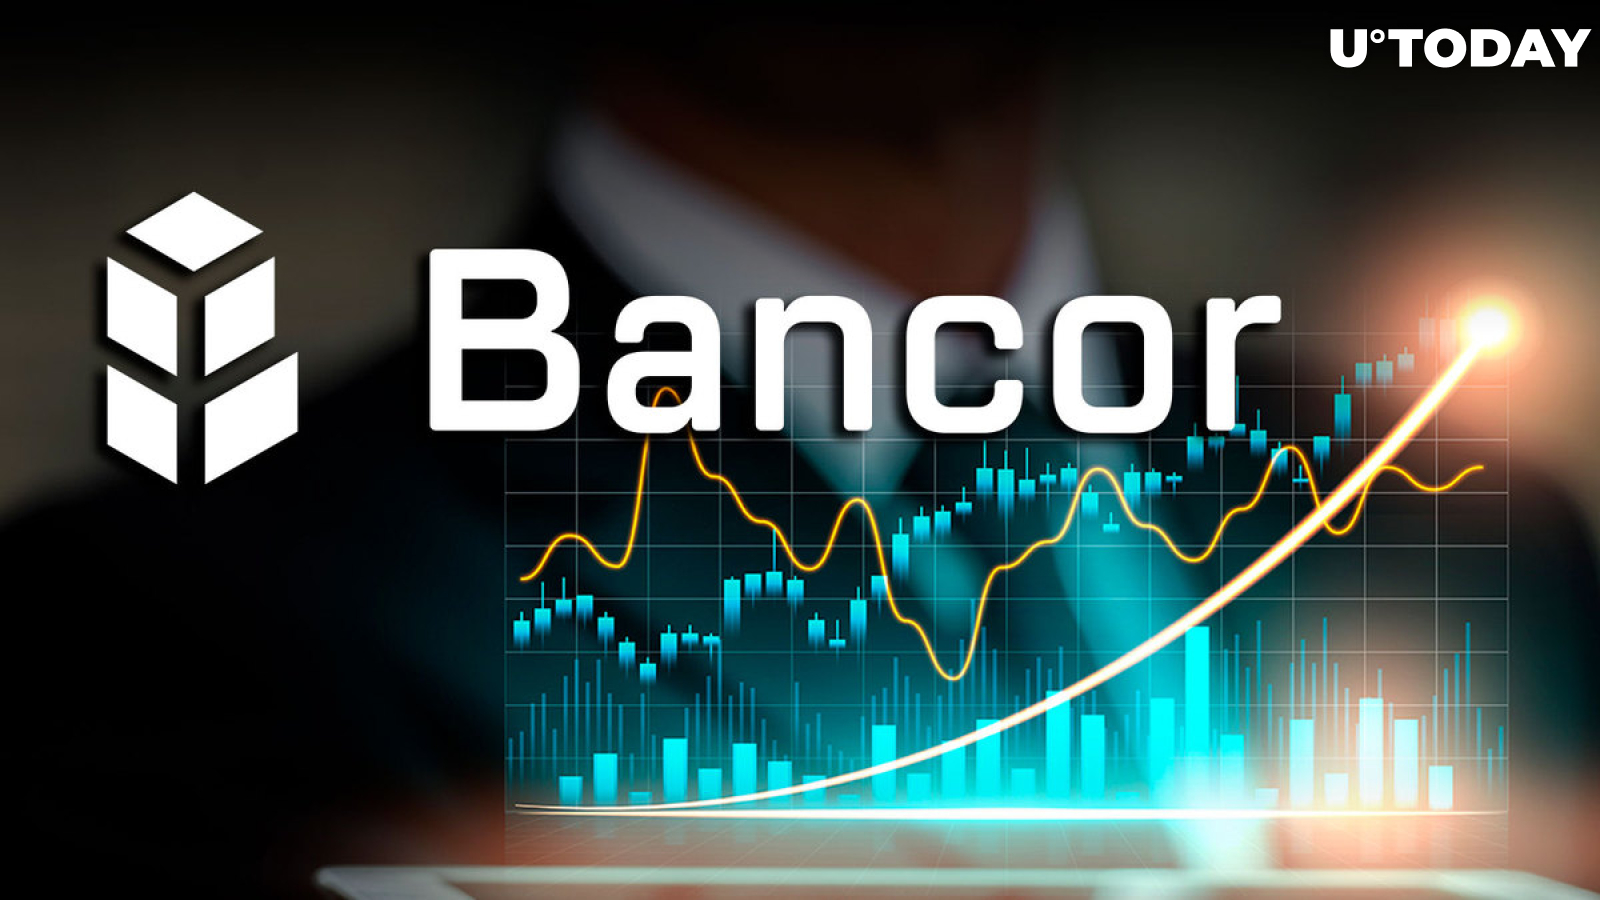 BlockChain Banter : r/Bancor